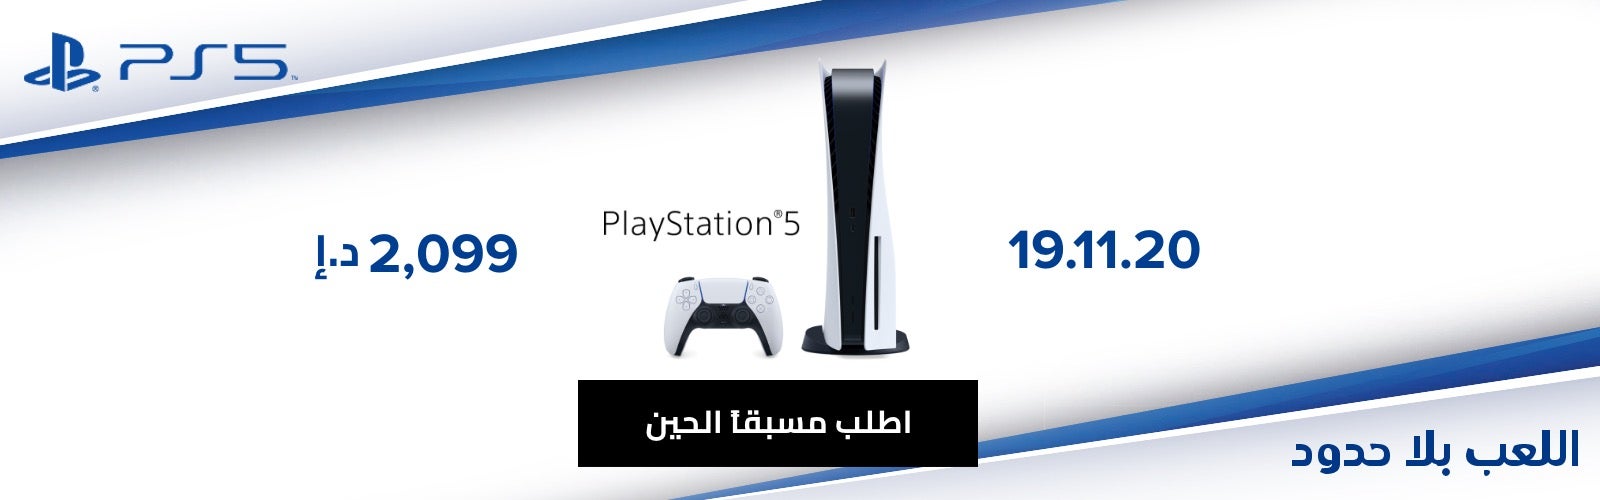 يندلع جندي مصر  Sony PlayStation 5 في الإمارات | خصم 30-75% | دبي وأبوظبي | نون